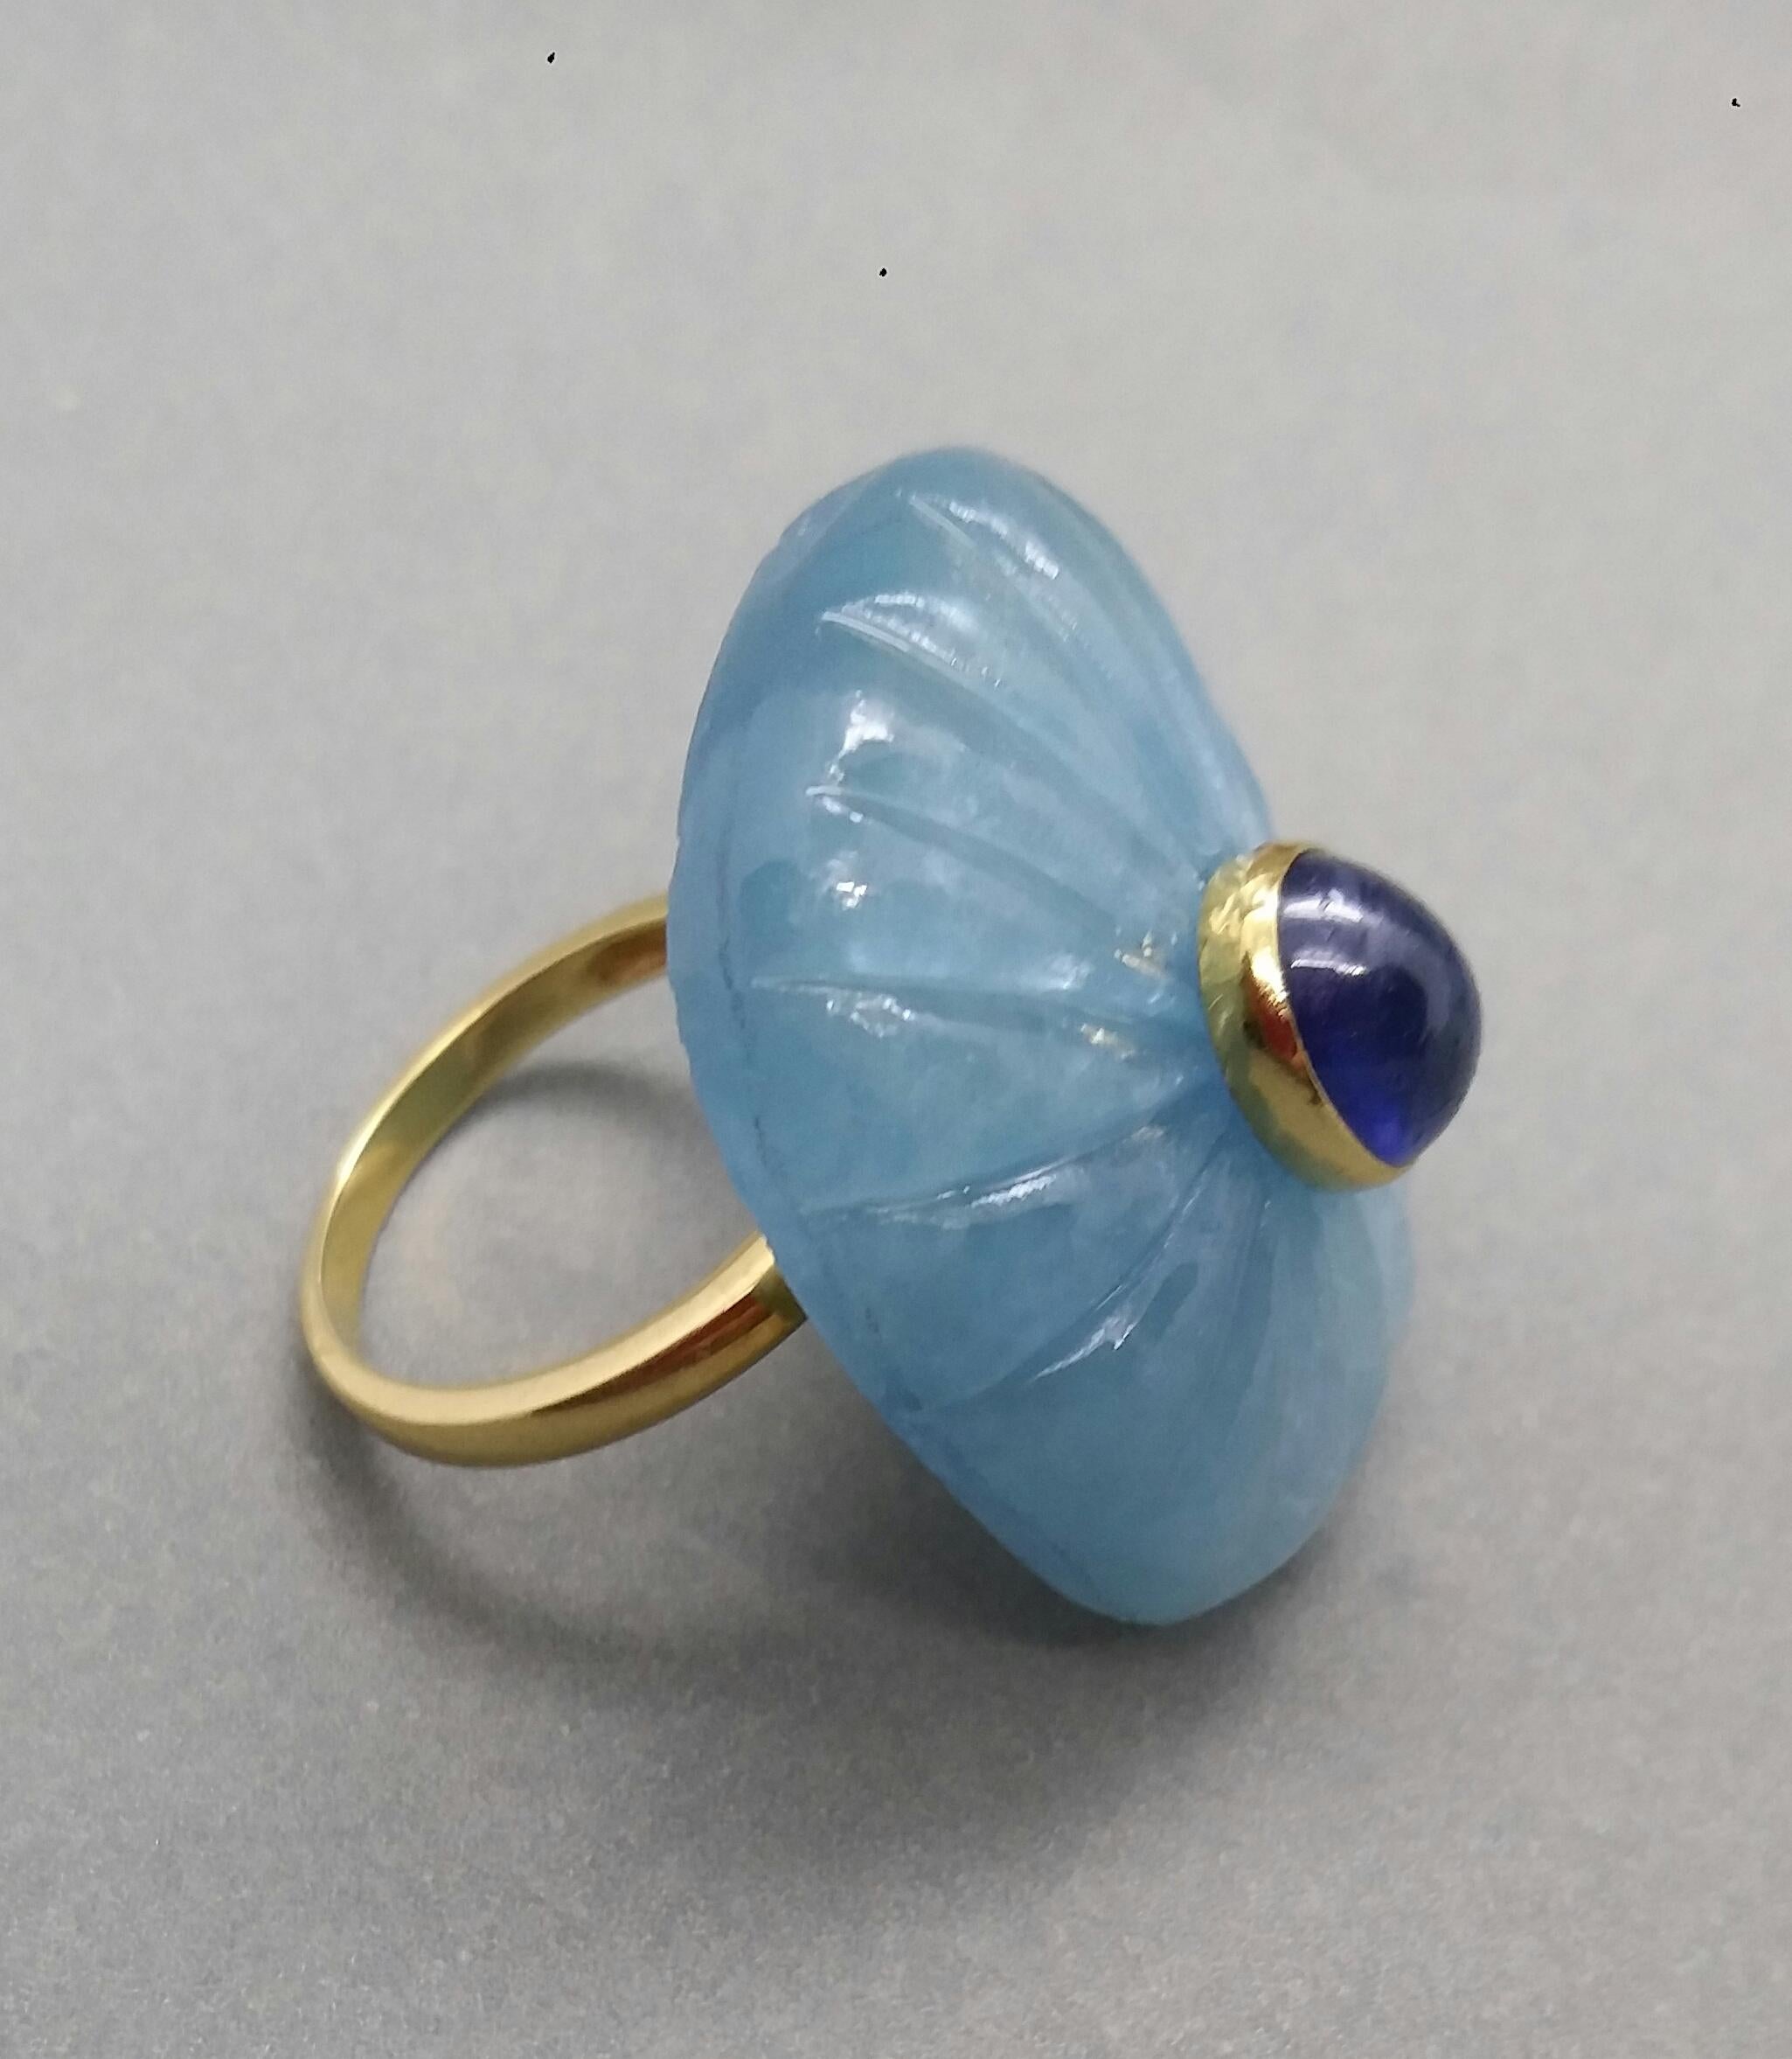 Einzigartiger Ring mit einem großen natürlichen eingravierten kissenförmigen Aquamarin, der 30 mm x 23 mm x 8 mm misst und 54 Karat wiegt, mit einem schönen ovalen blauen Saphir-Cabochon, der 6 mm x 8 mm misst und in 14 kt Gelbgold gefasst ist...Der